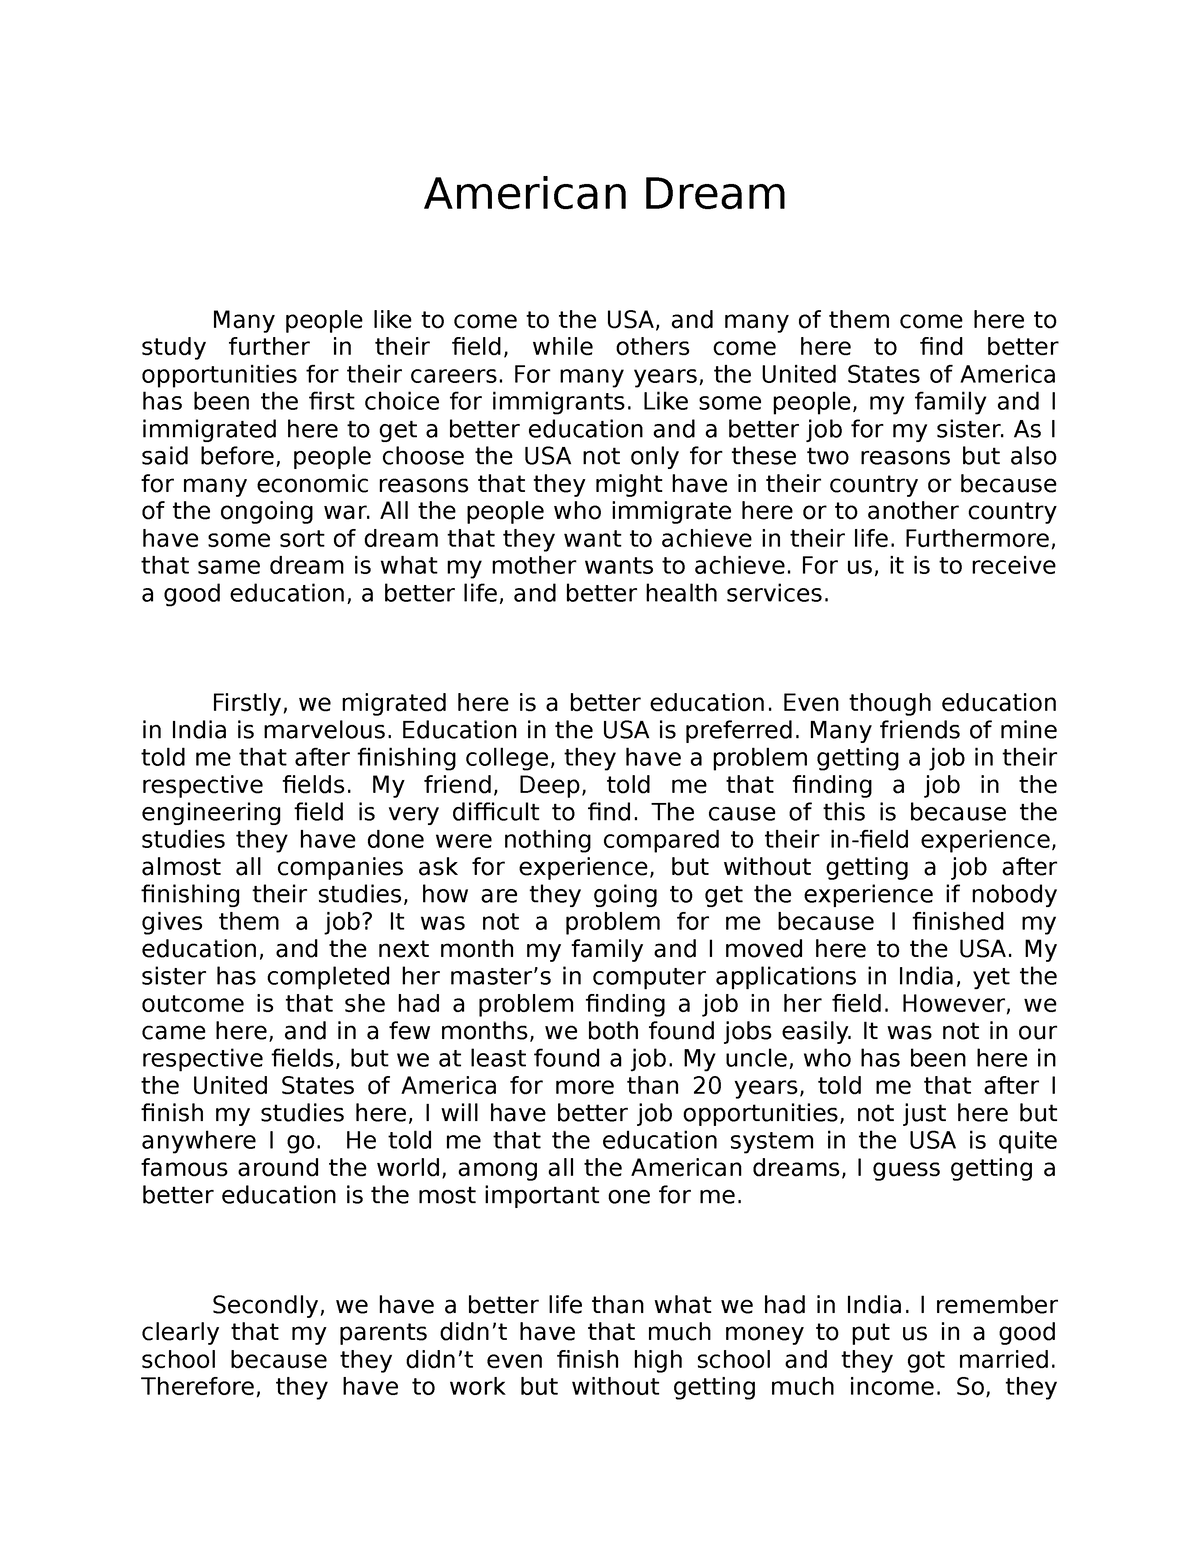 the american dream essay